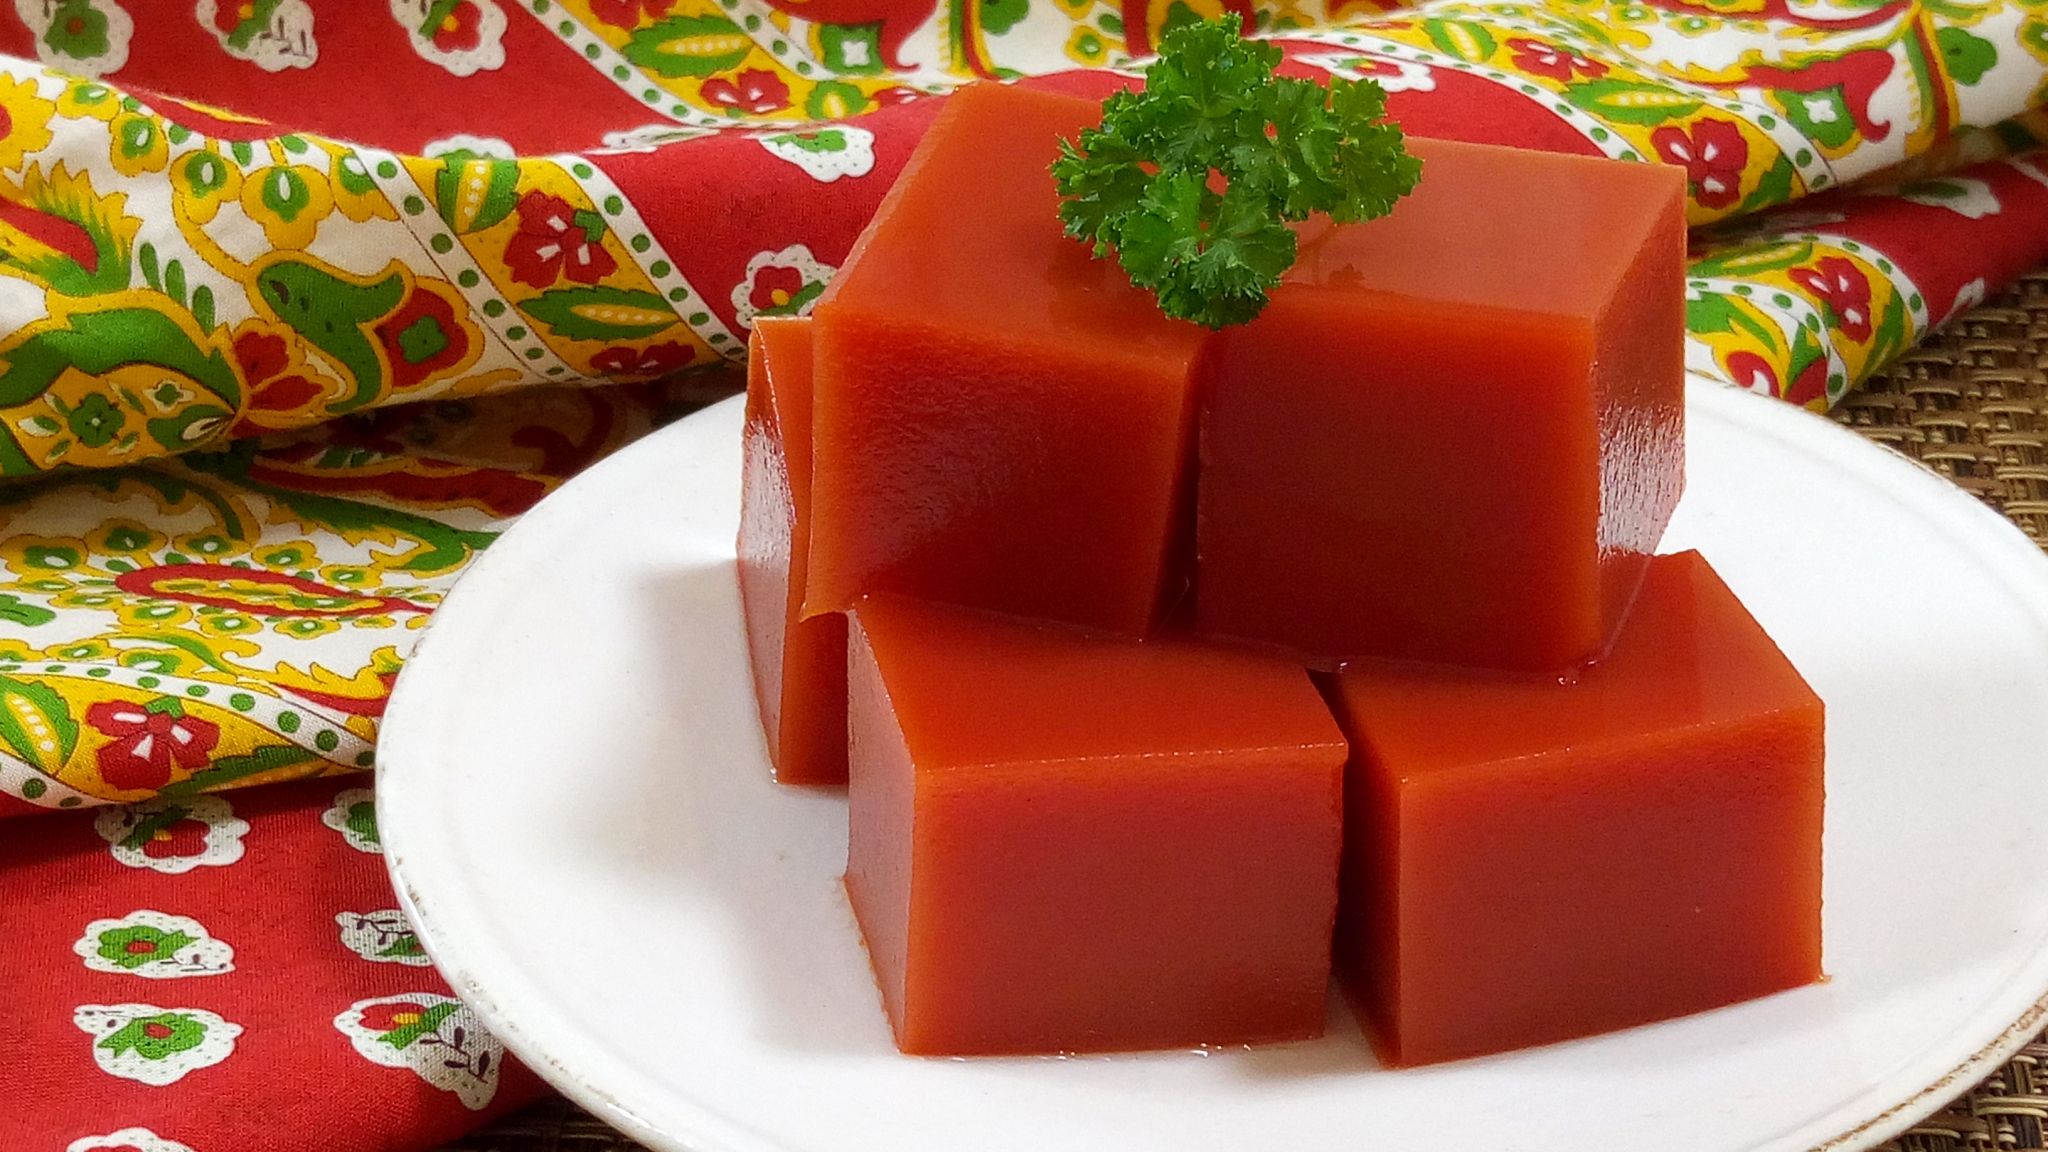 トマト寒天のレシピ ダイエット 美肌効果があります やまでら くみこ のレシピ